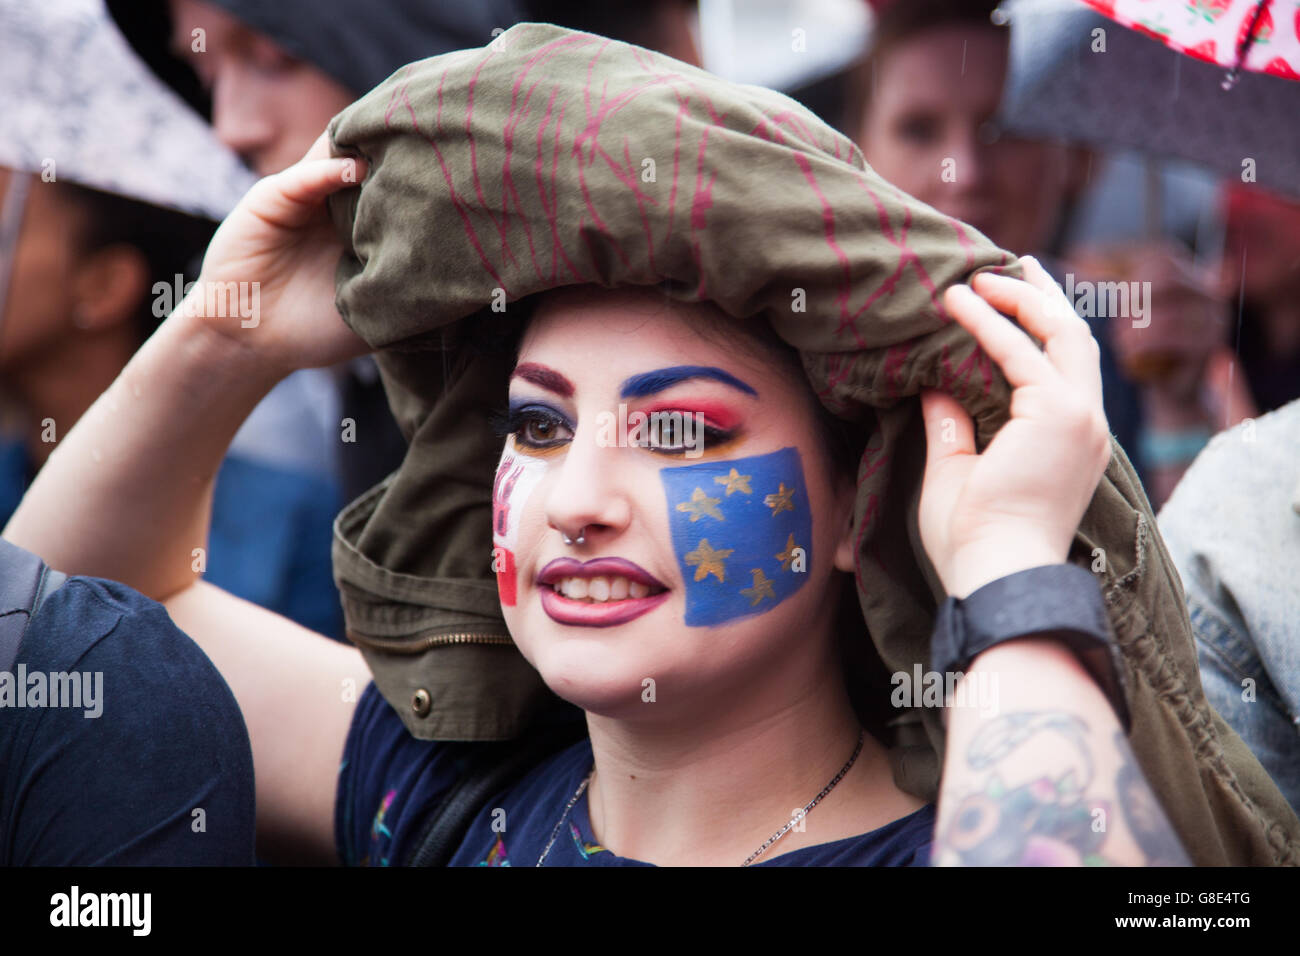 Londra, Regno Unito. Il 28 giugno, 2016. I cittadini britannici protesta in Trafalgar Square contro i risultati del referendum nel Regno Unito a lasciare l'UE. Credito: Melinda Nagy/Alamy Live News Foto Stock